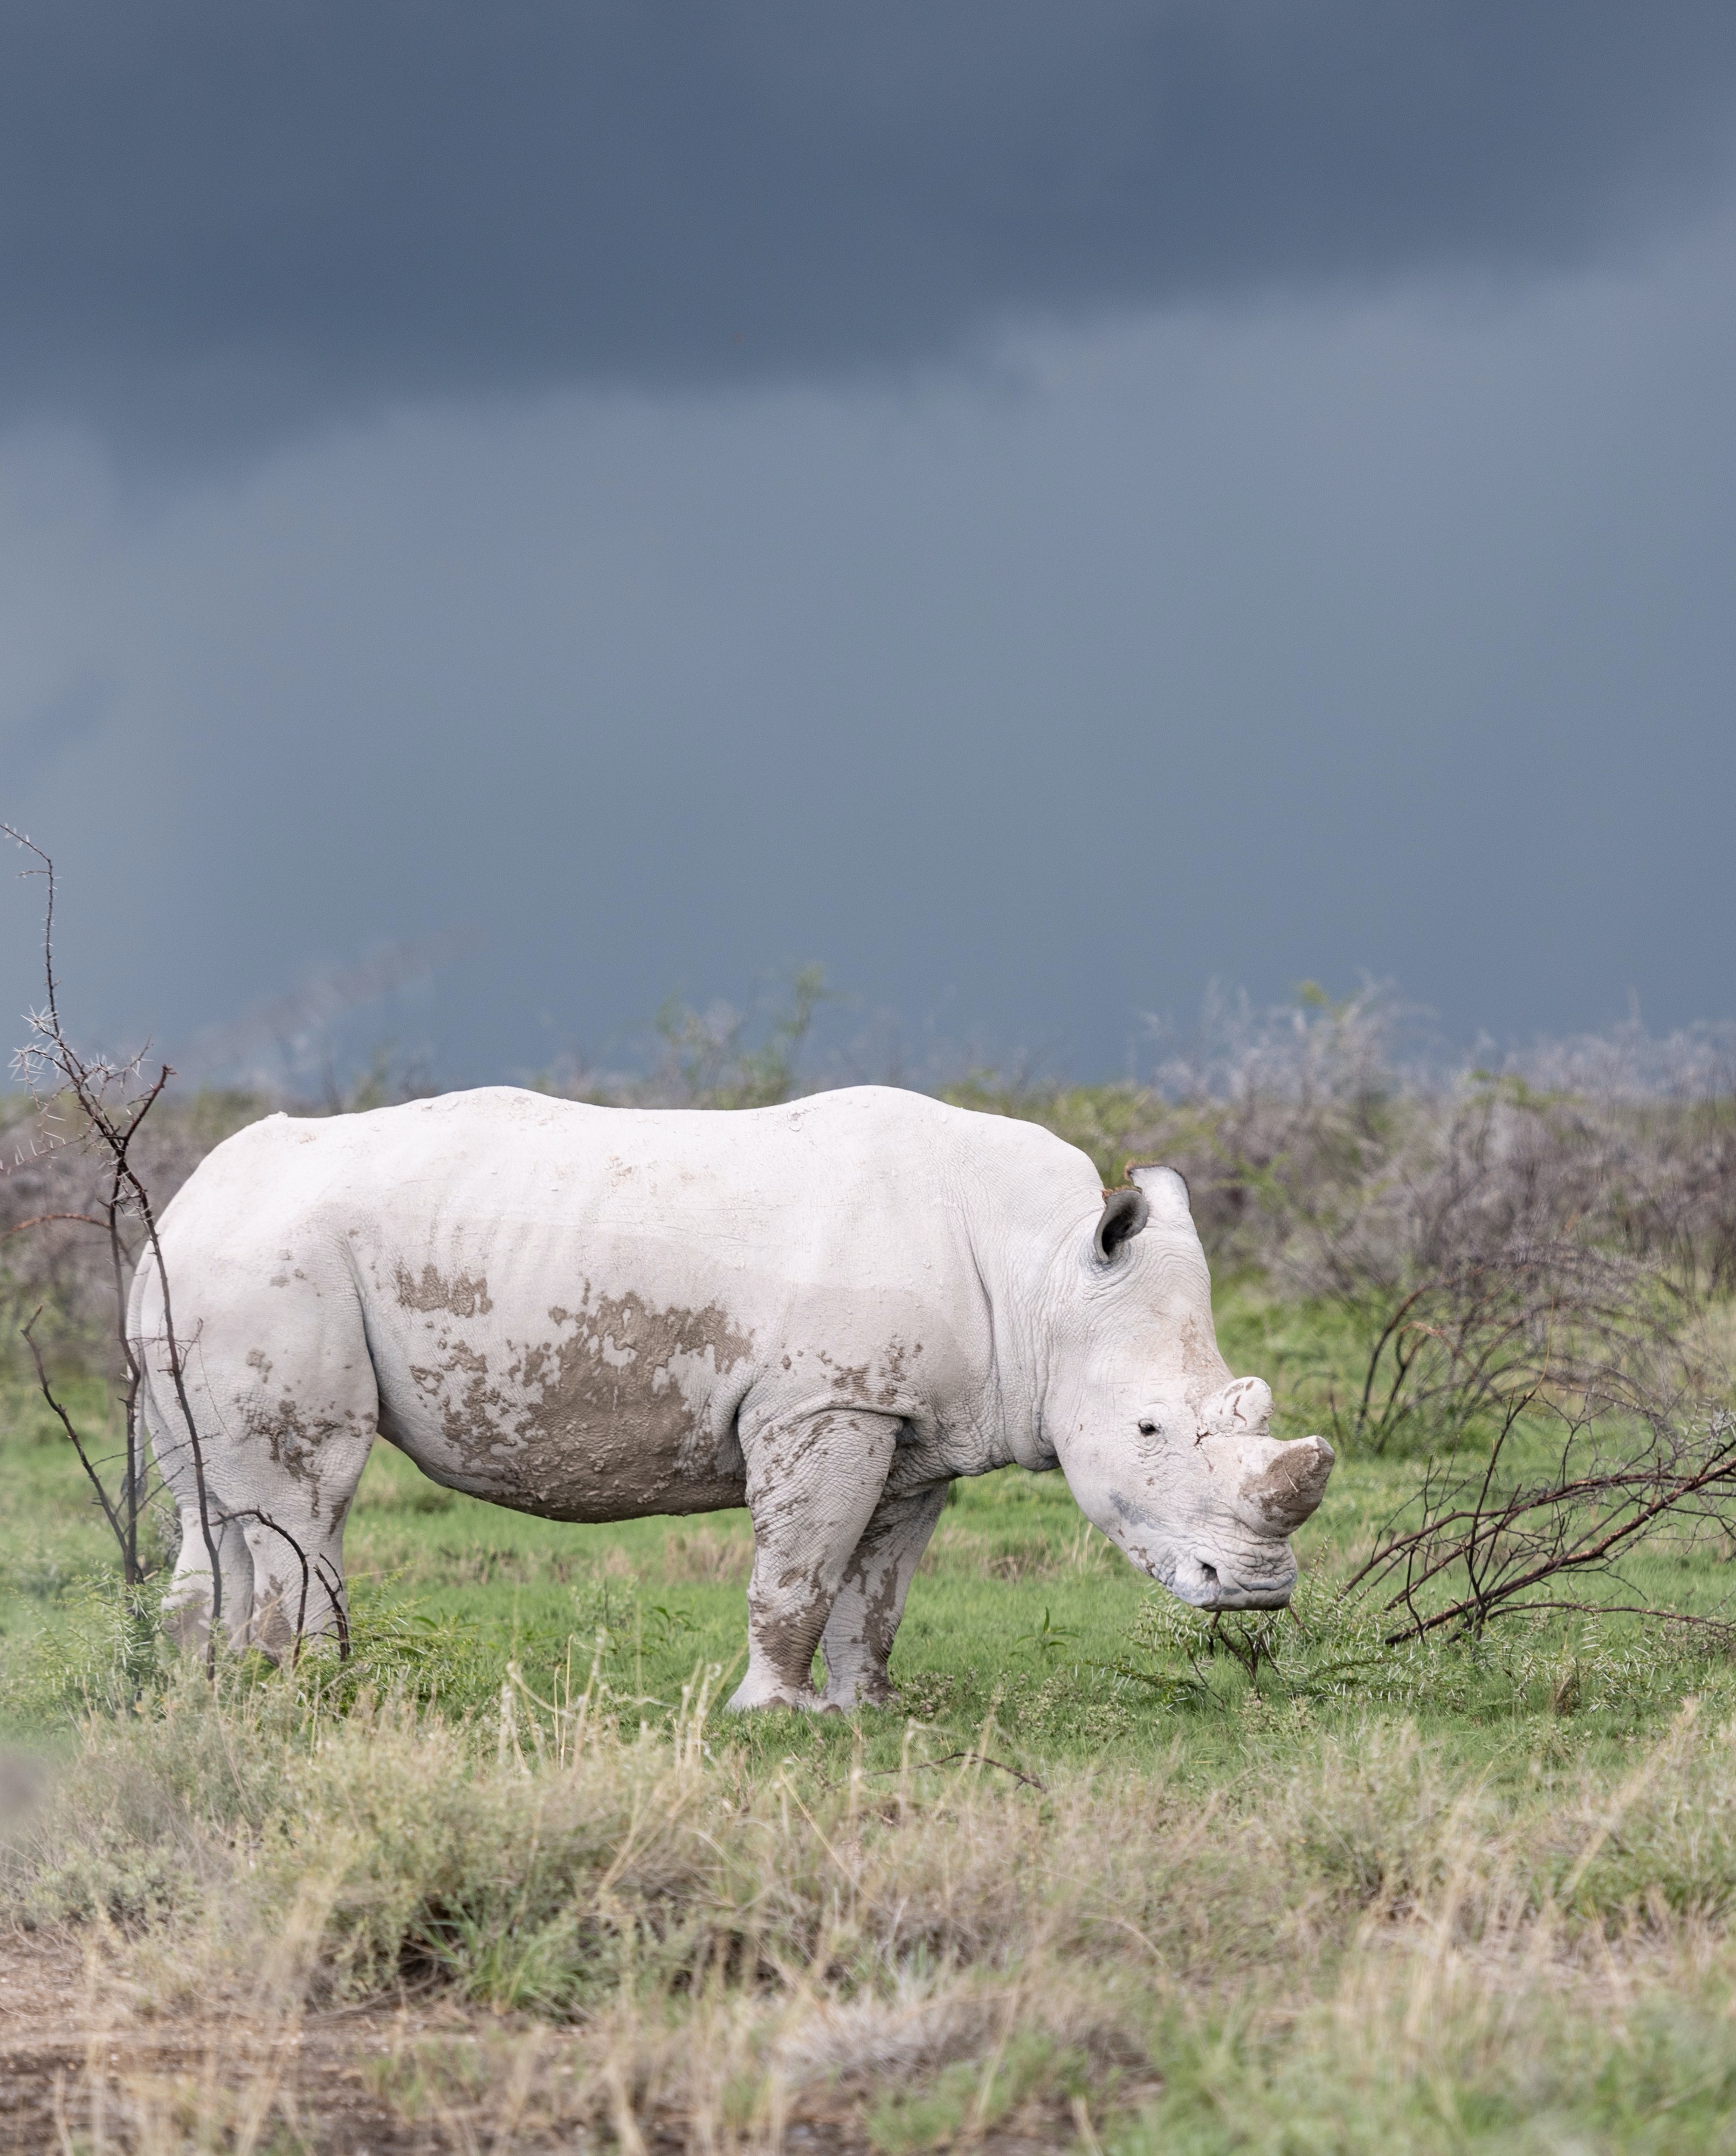 Tê giác trắng hiện nay đang trở thành loài động vật có nguy cơ tuyệt chủng, hãy cùng đến với những hình ảnh đẹp nhất về loài động vật quý hiếm này để cùng nhau bảo vệ chúng. Các hình ảnh sẽ hỗ trợ bạn hiểu rõ hơn về các nỗ lực bảo vệ tê giác ngày nay.